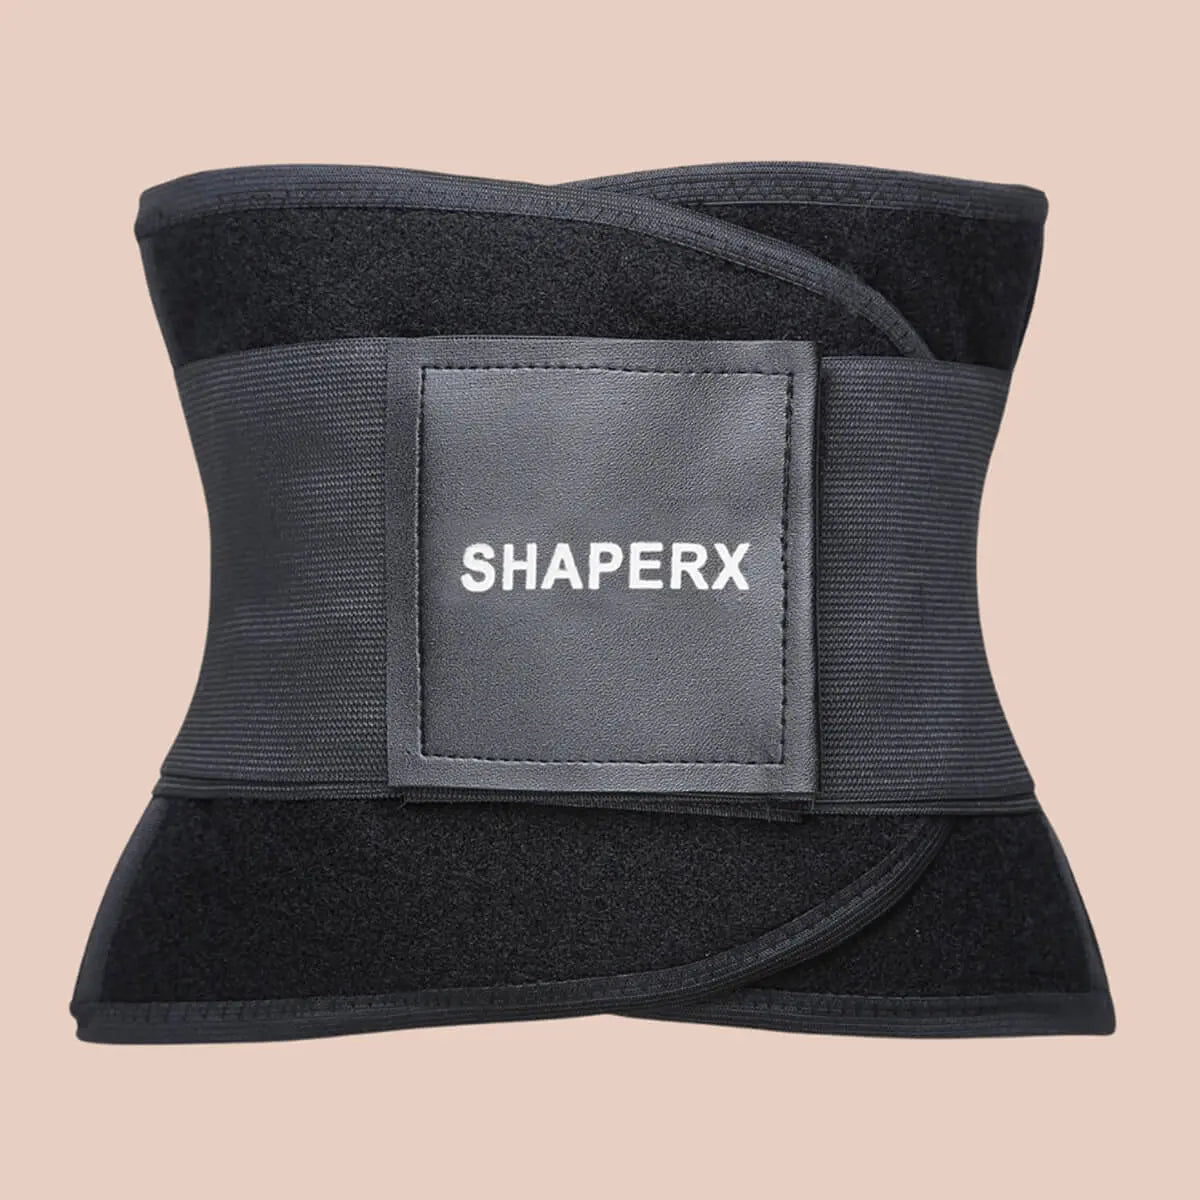 Shaperx Women's Waist Training Eraser Belt Belly Waist Belt Body